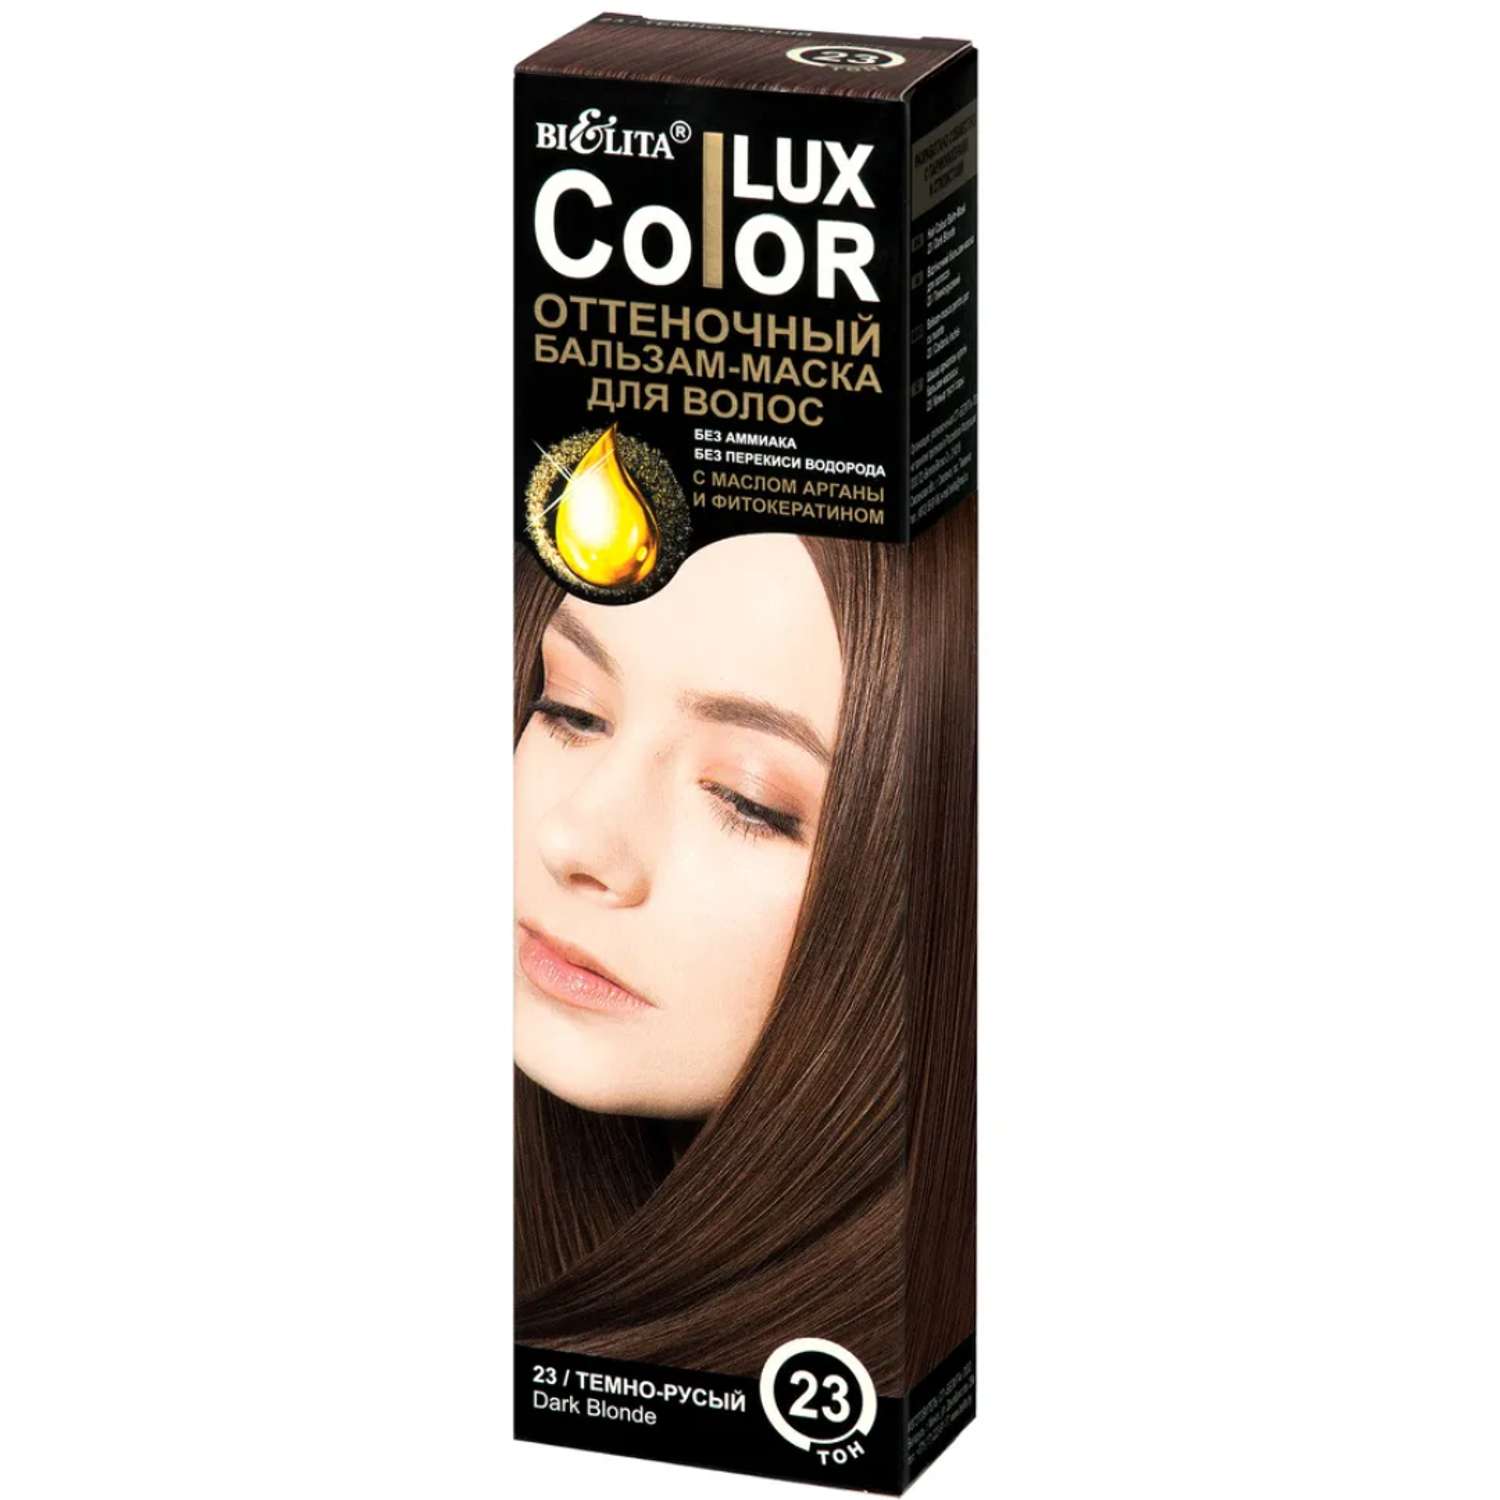 Бальзам для волос БЕЛИТА оттеночный маска Color Lux с маслом арганы и фитокератином тон 23 темно-русый 100 мл - фото 1